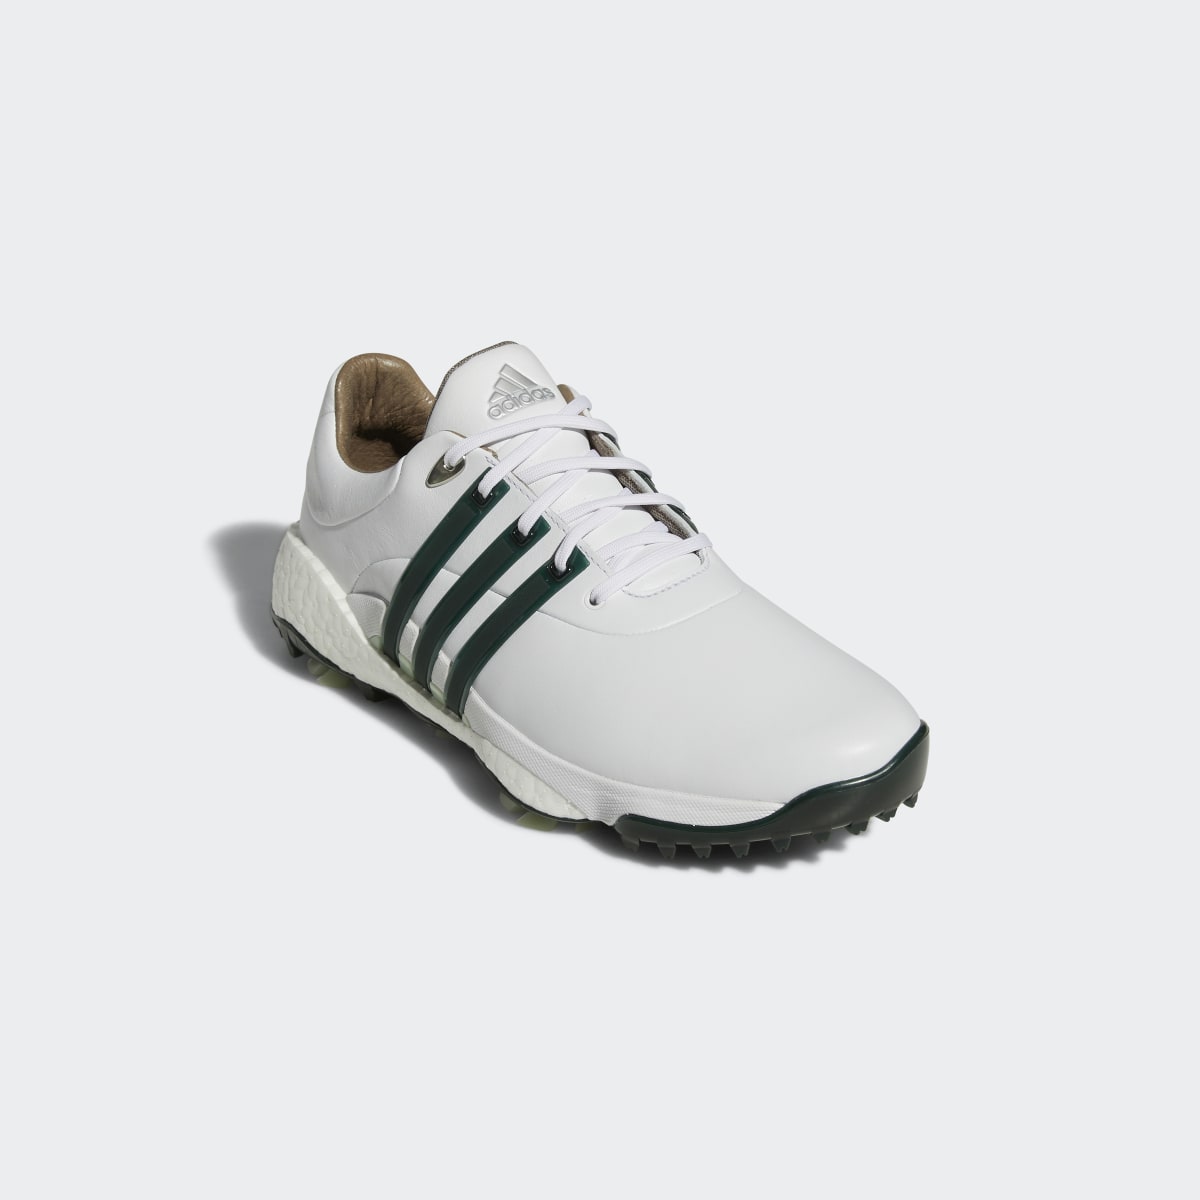 Adidas Tour360 22 Golf Shoes. 8